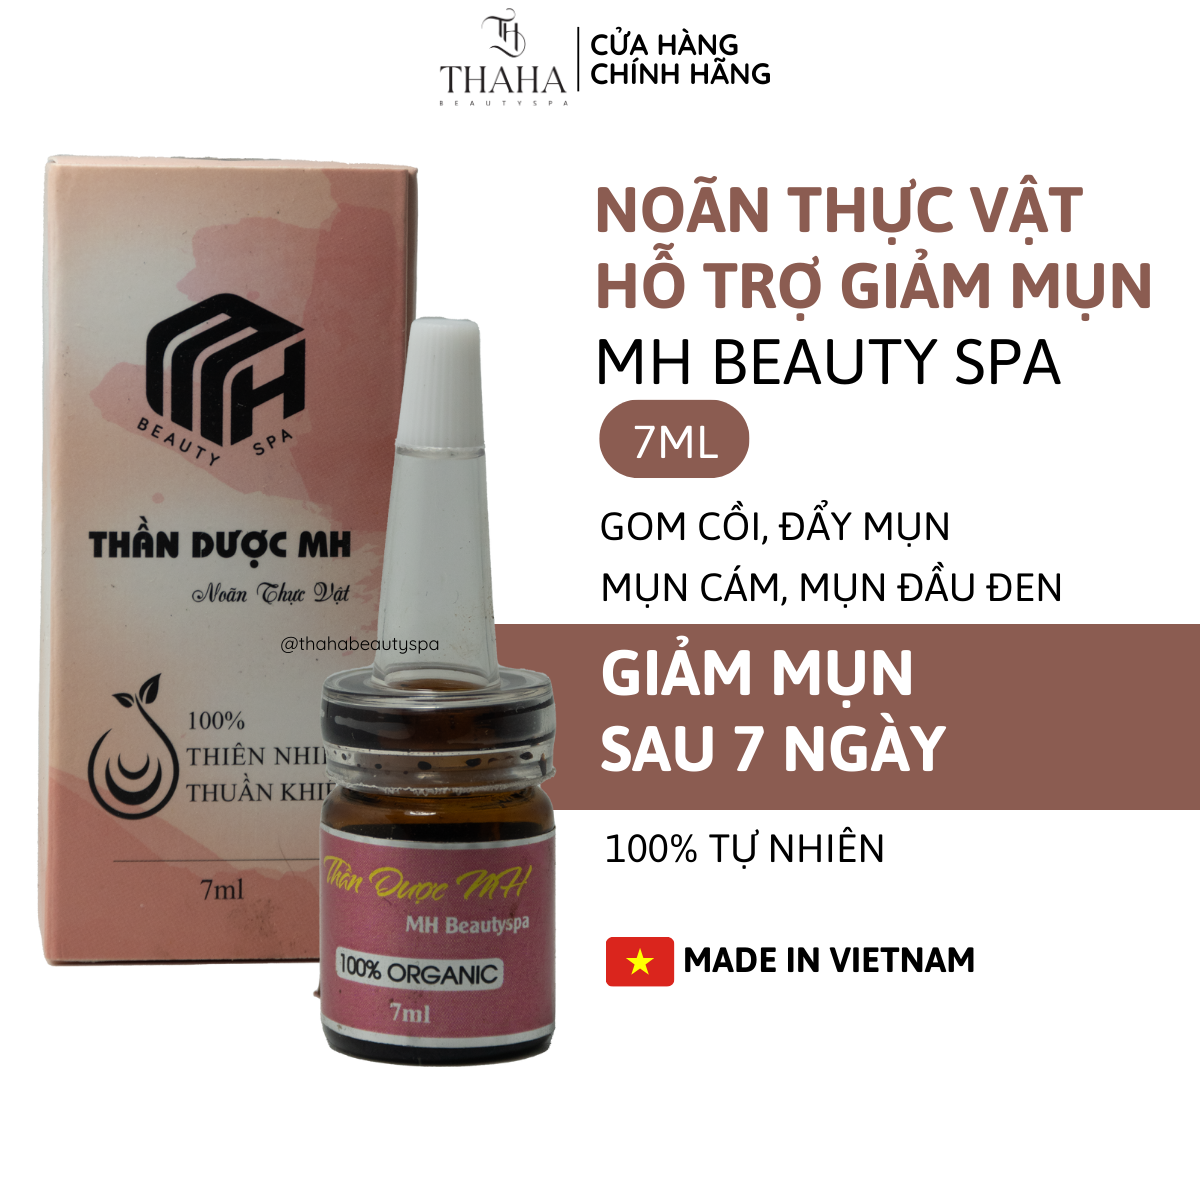 [CHÍNH HÃNG] Noãn thực vật MH Beauty Spa Thần dược MH 7ml serum giảm mụn dưỡng phục hồi da làm dịu da